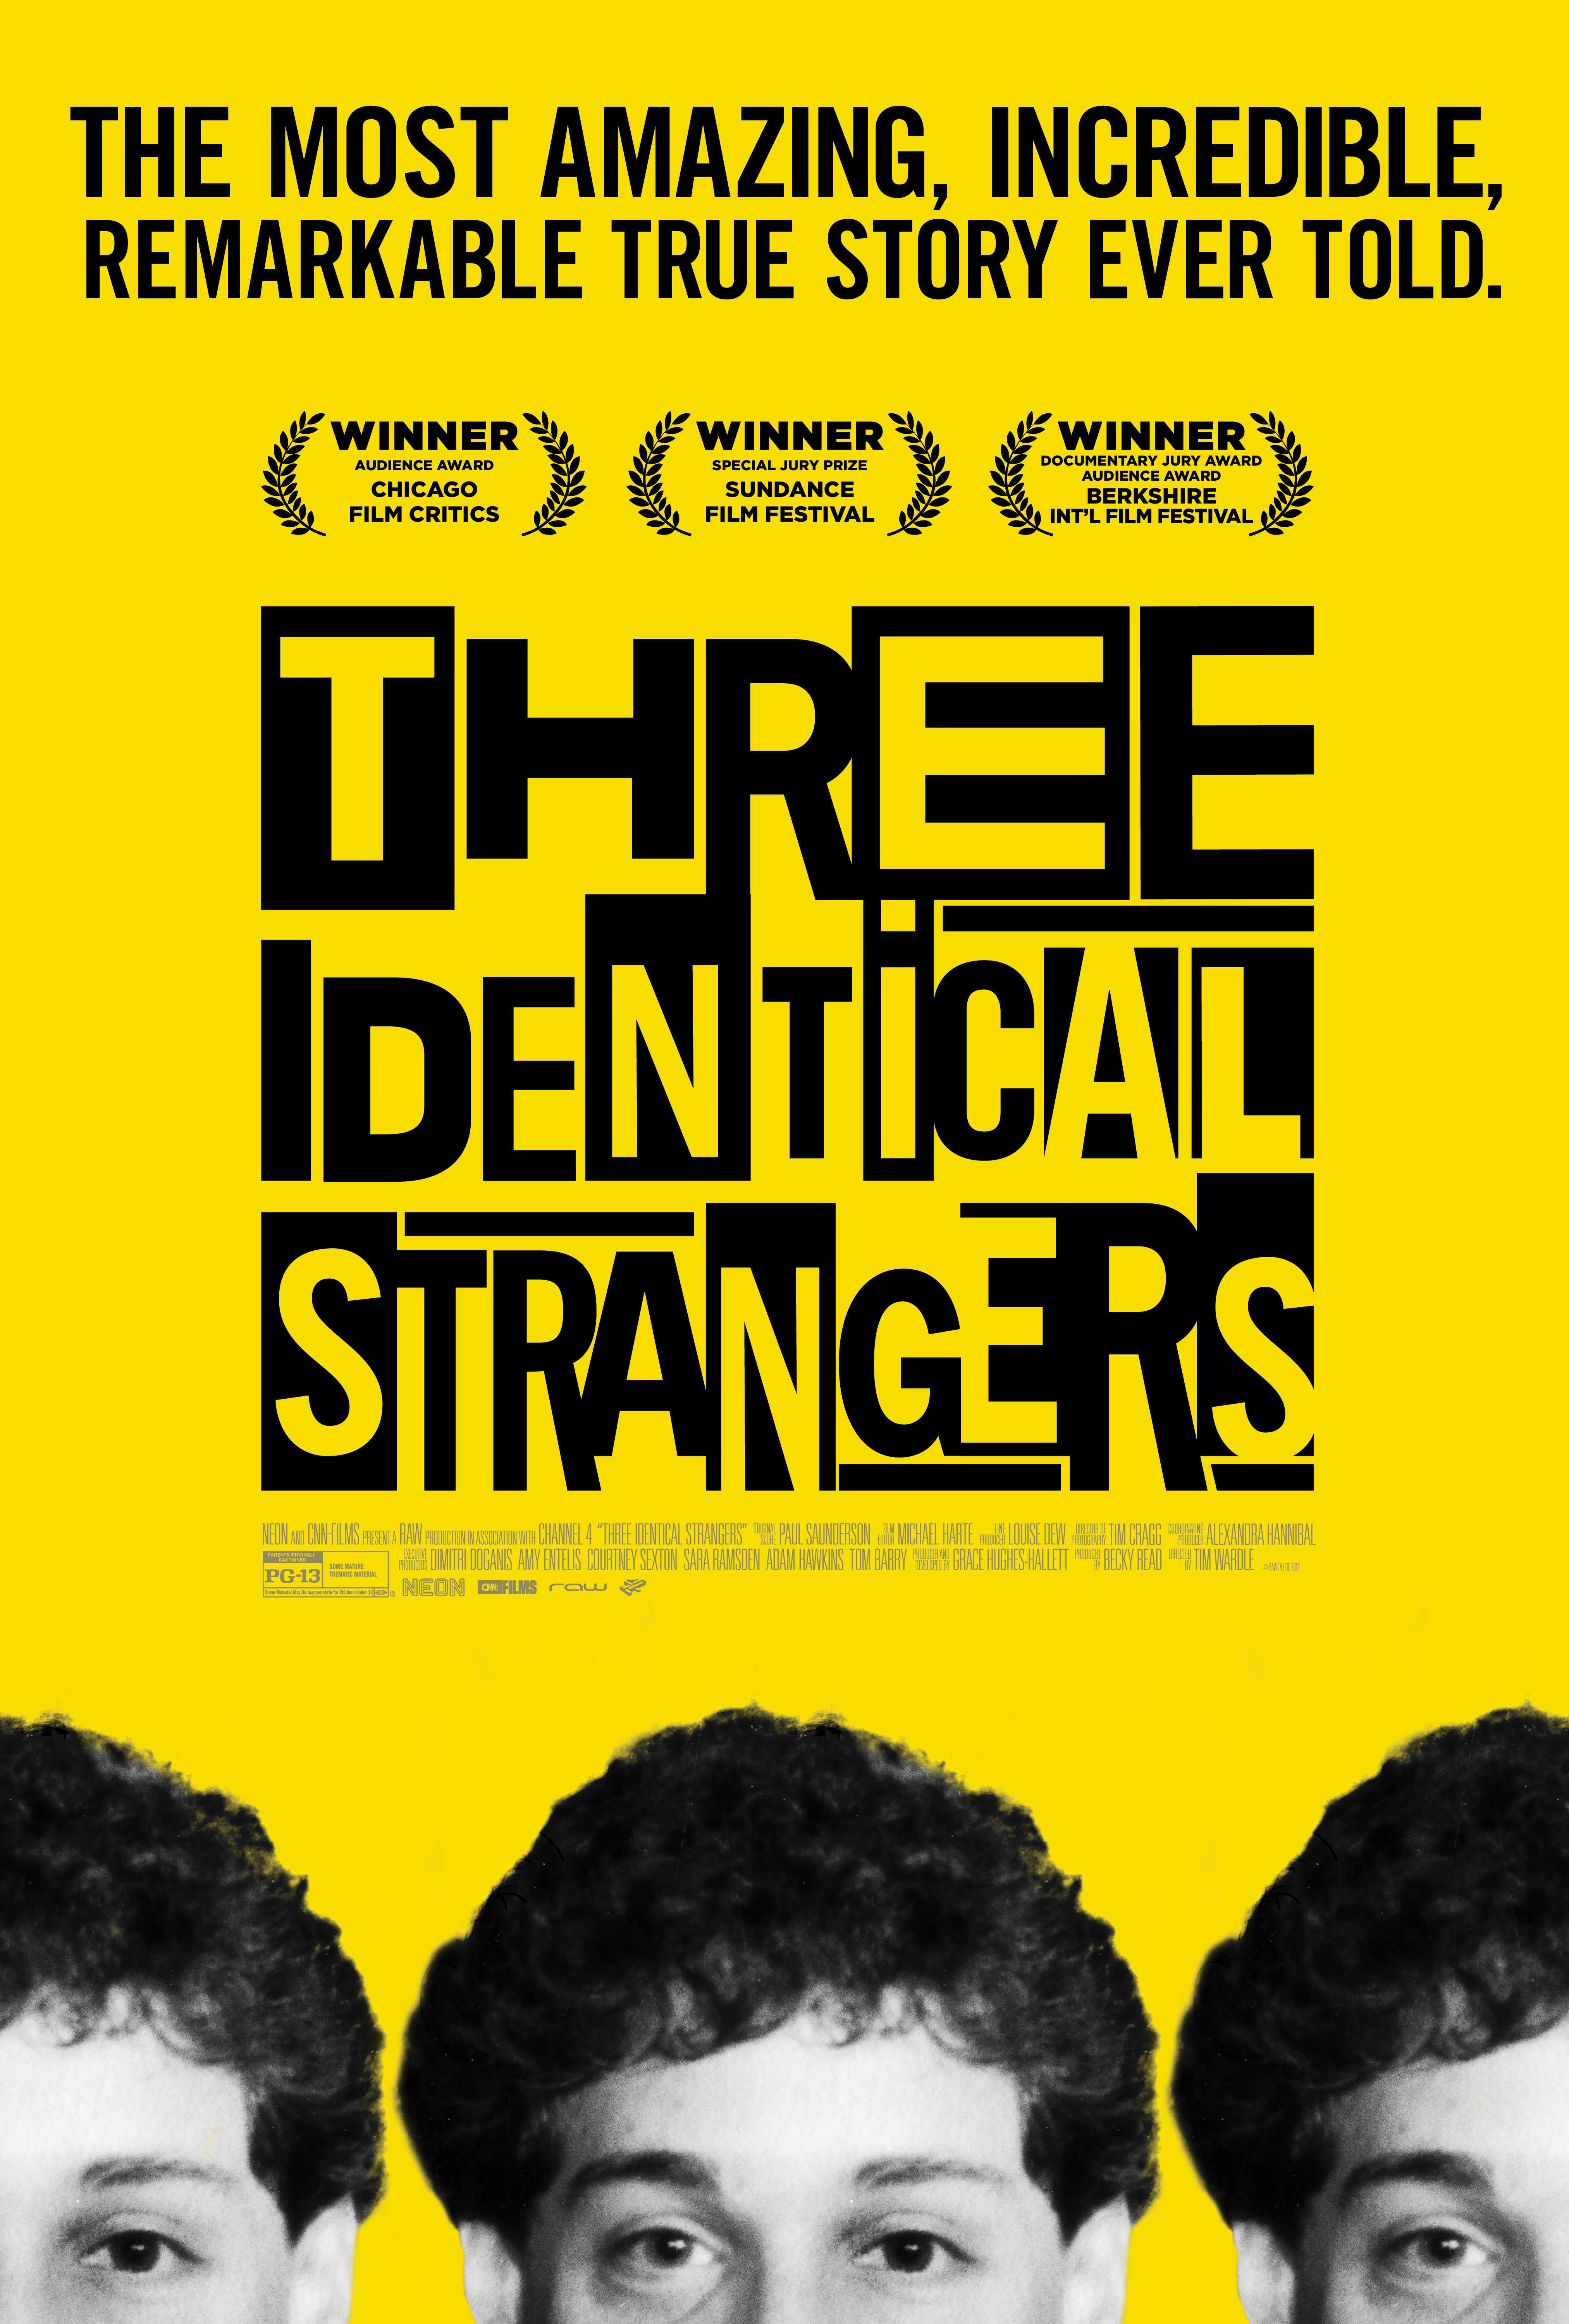 مشاهدة فيلم Three Identical Strangers 2018 مترجم